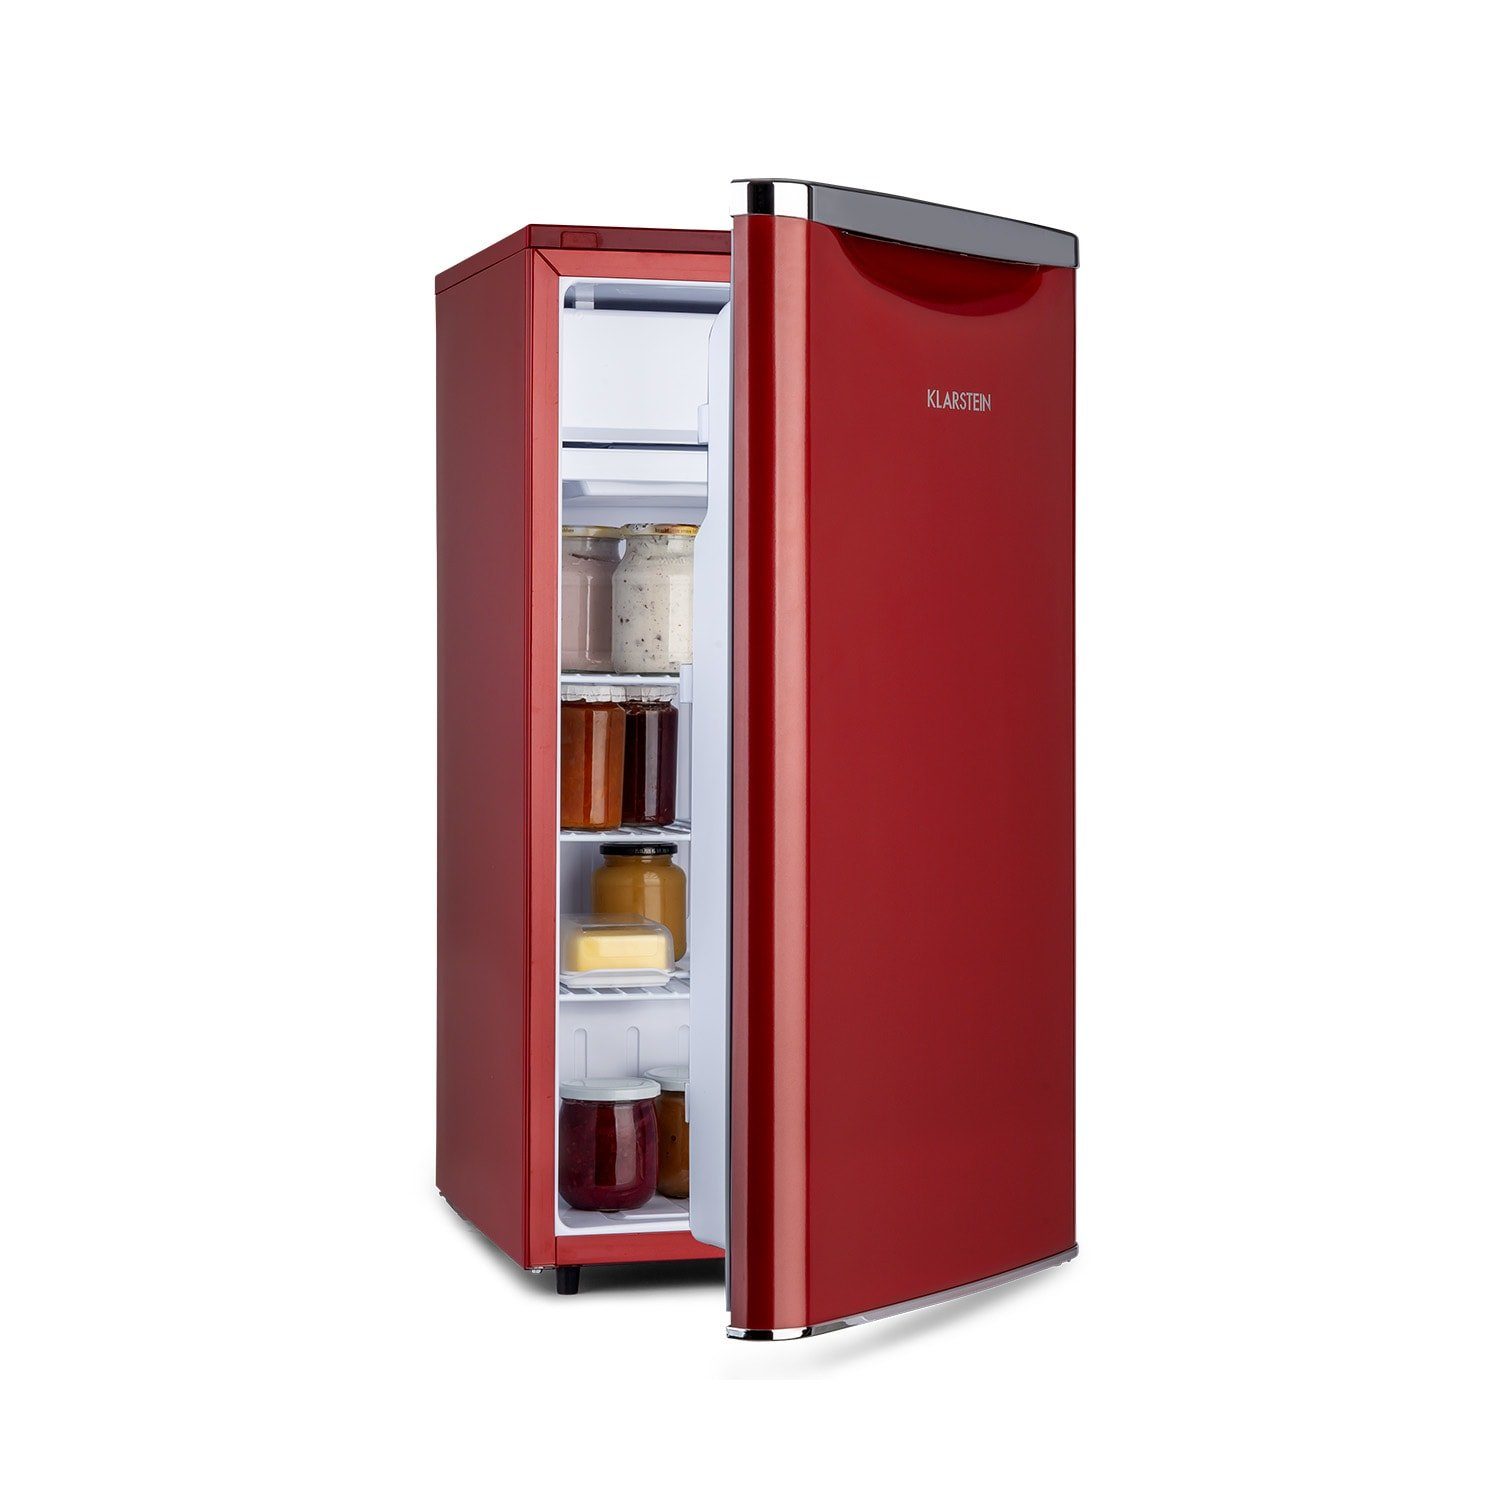 Klarstein Getränkekühlschrank HEA19-Yummy-90Lred 10035213, 84 cm hoch, 45 cm breit